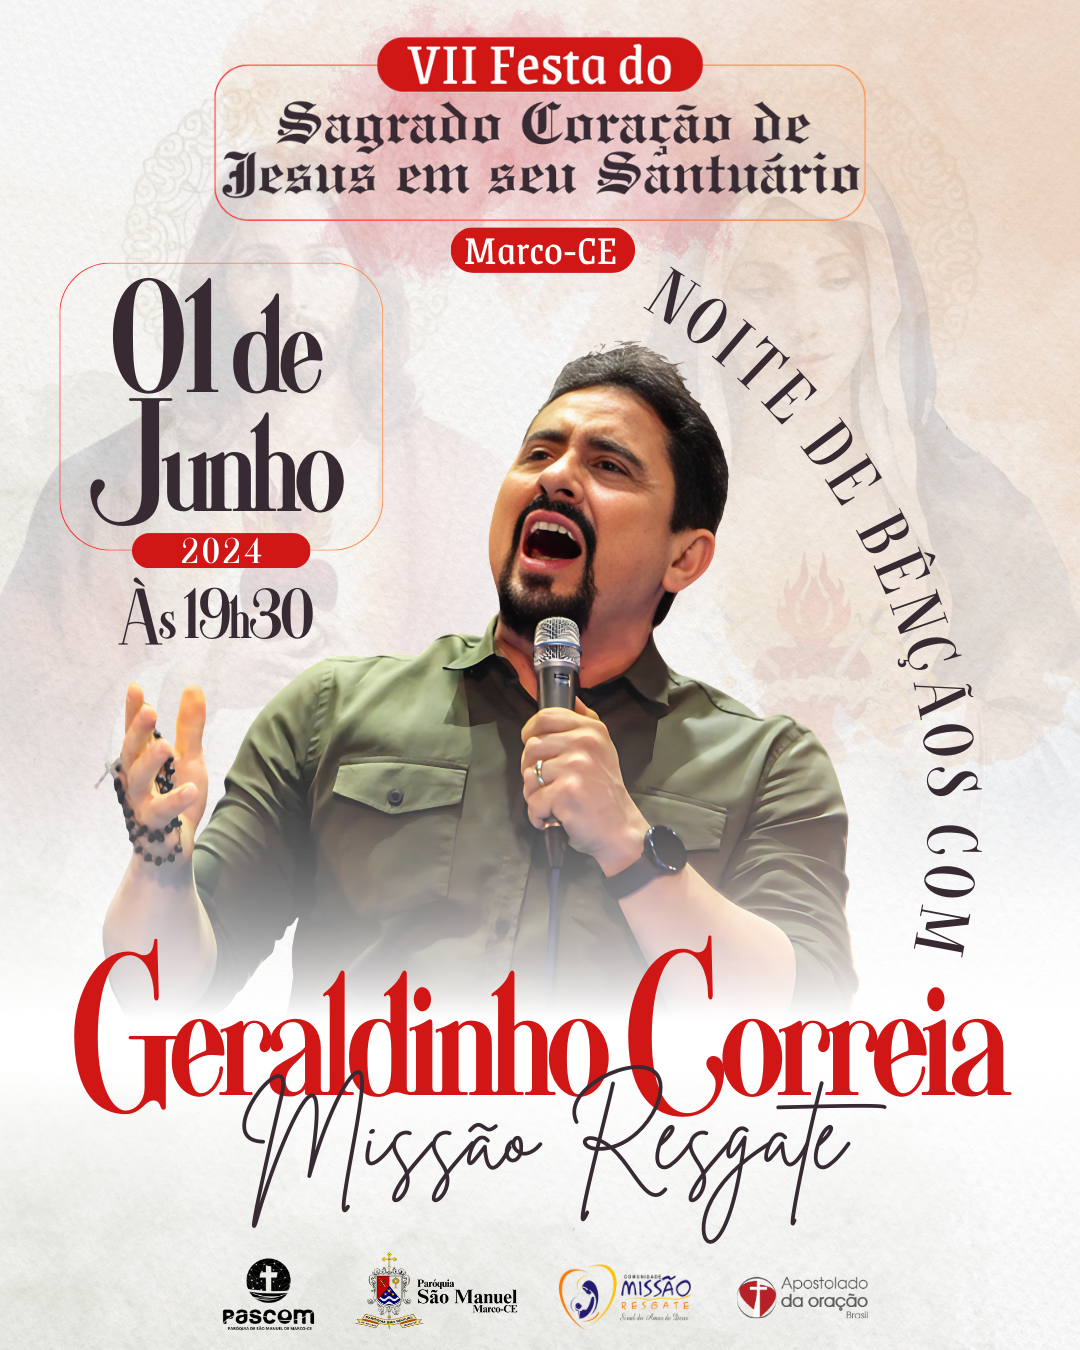 Show Noite de Bênçãos com Geraldinho Correia. Créditos: Paróquia de São Manuel